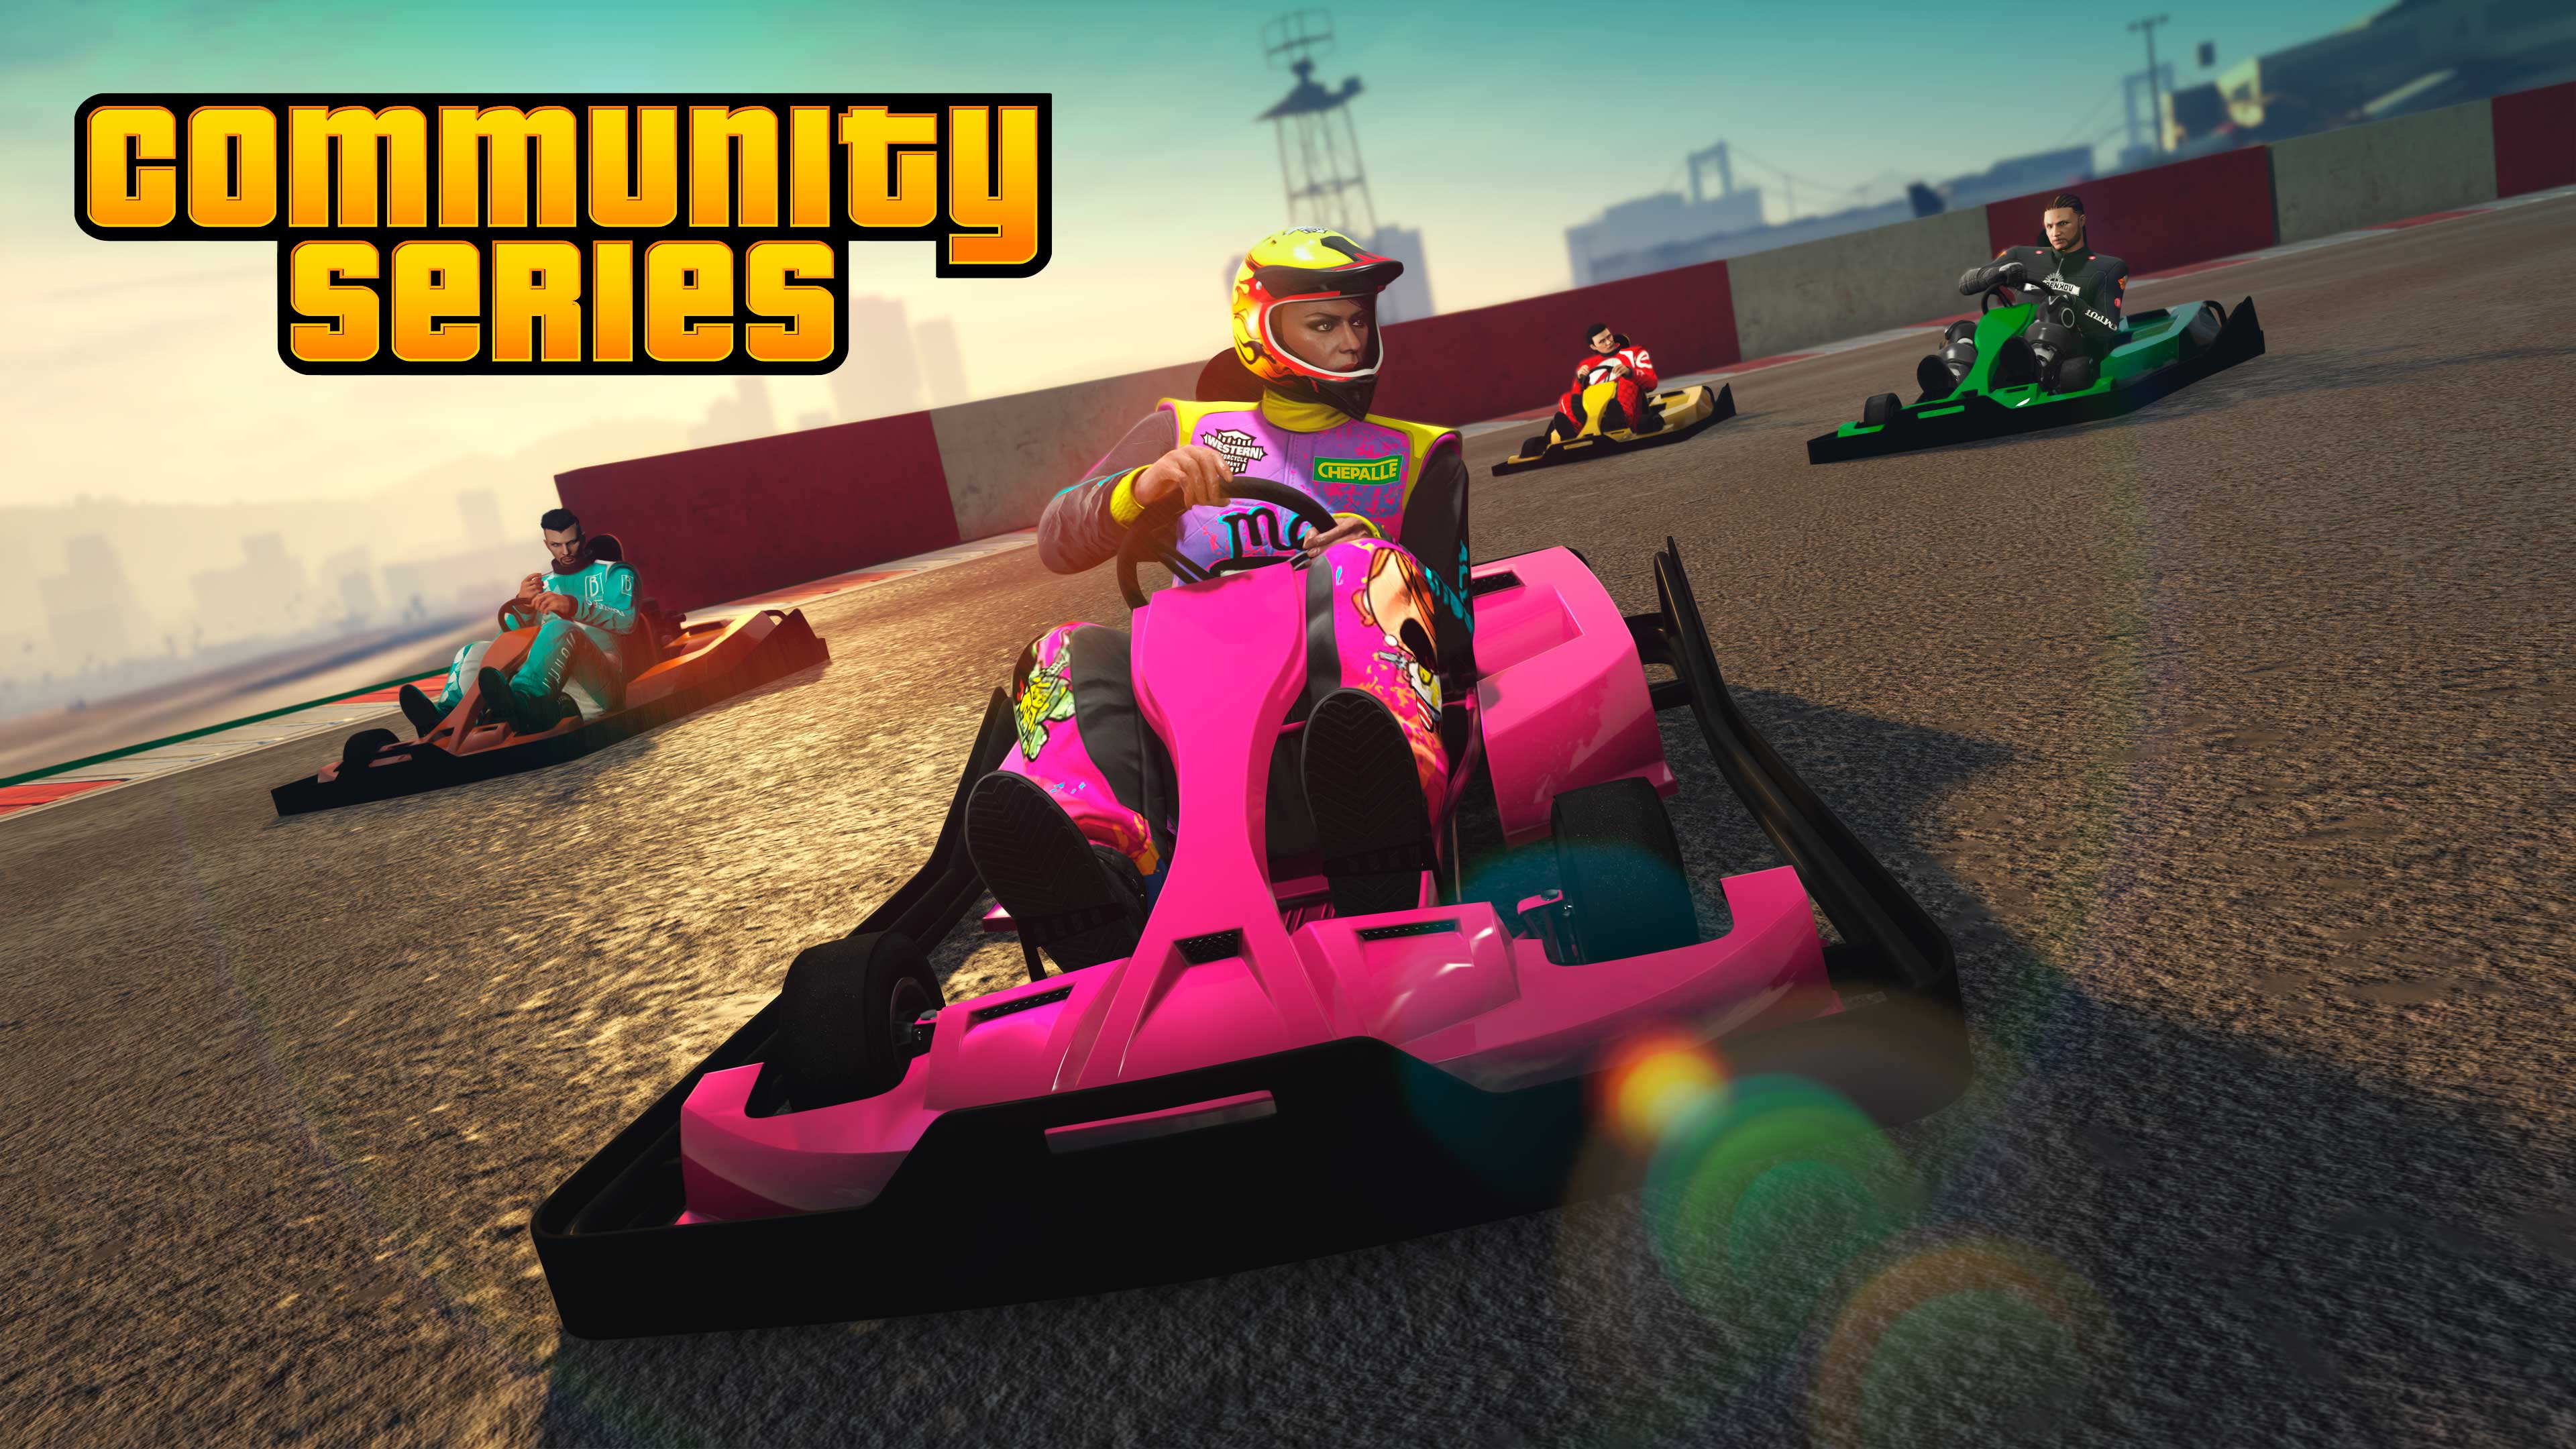 Poster della serie della comunità con quattro personaggi di GTA Online alla guida di go-kart